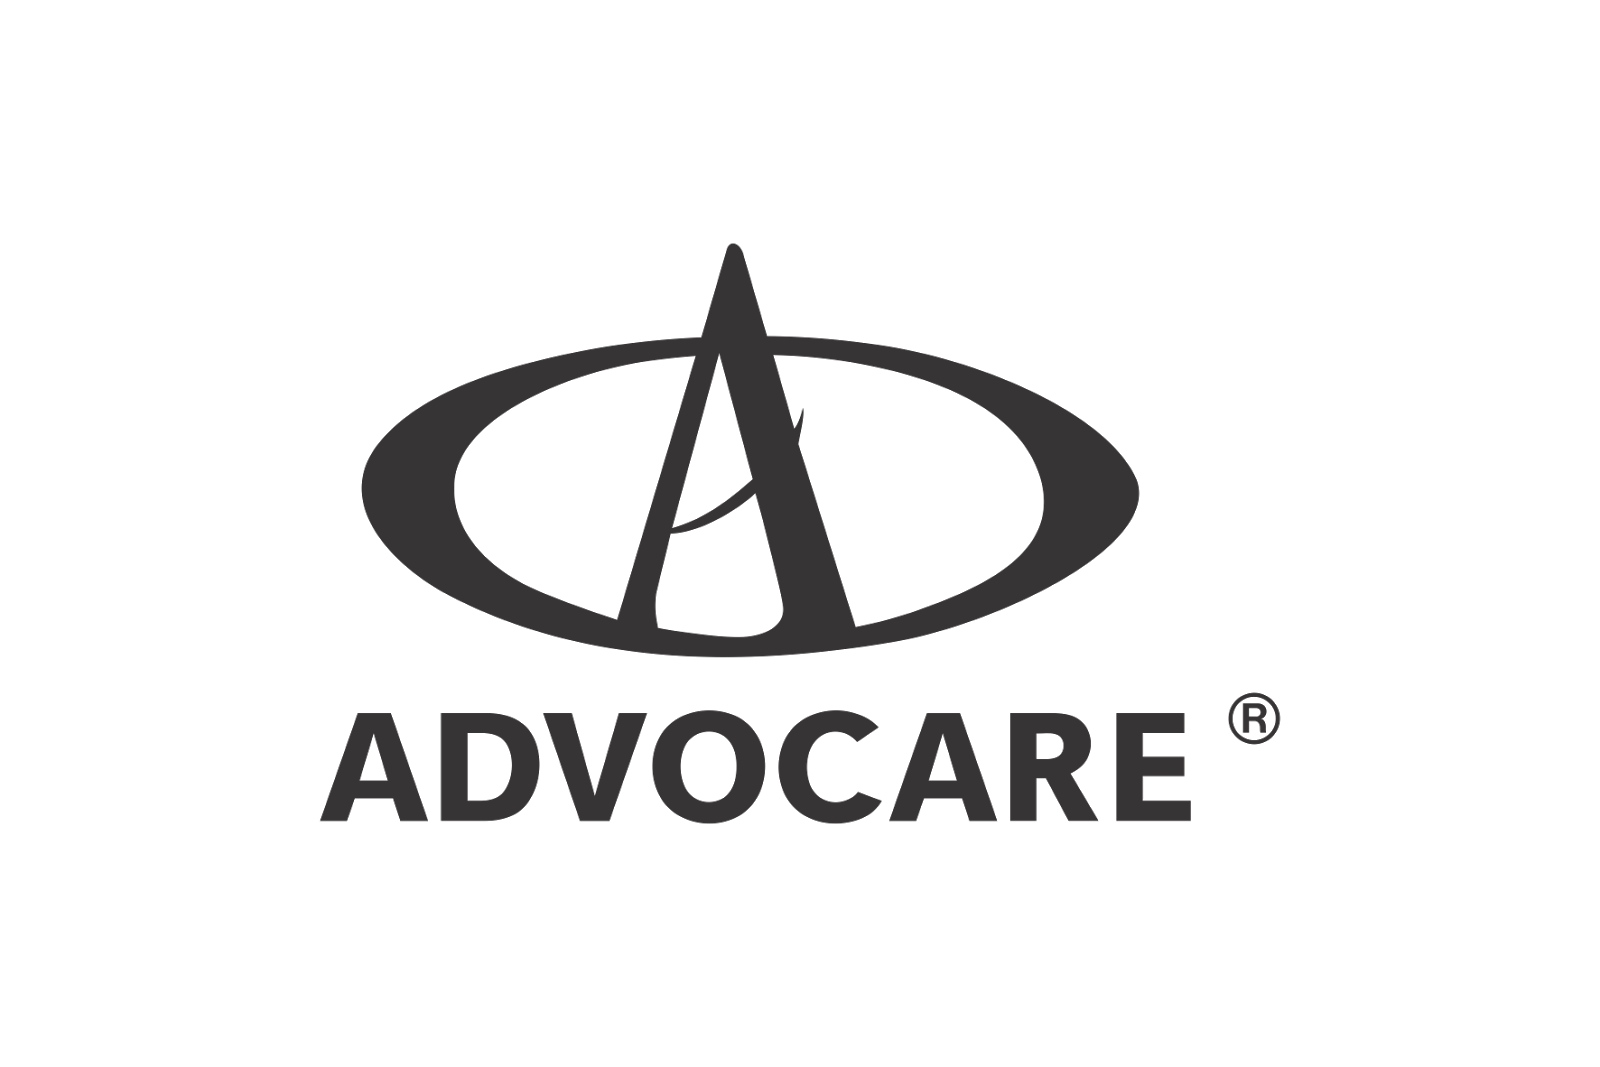 Advocare vector logo Advocare